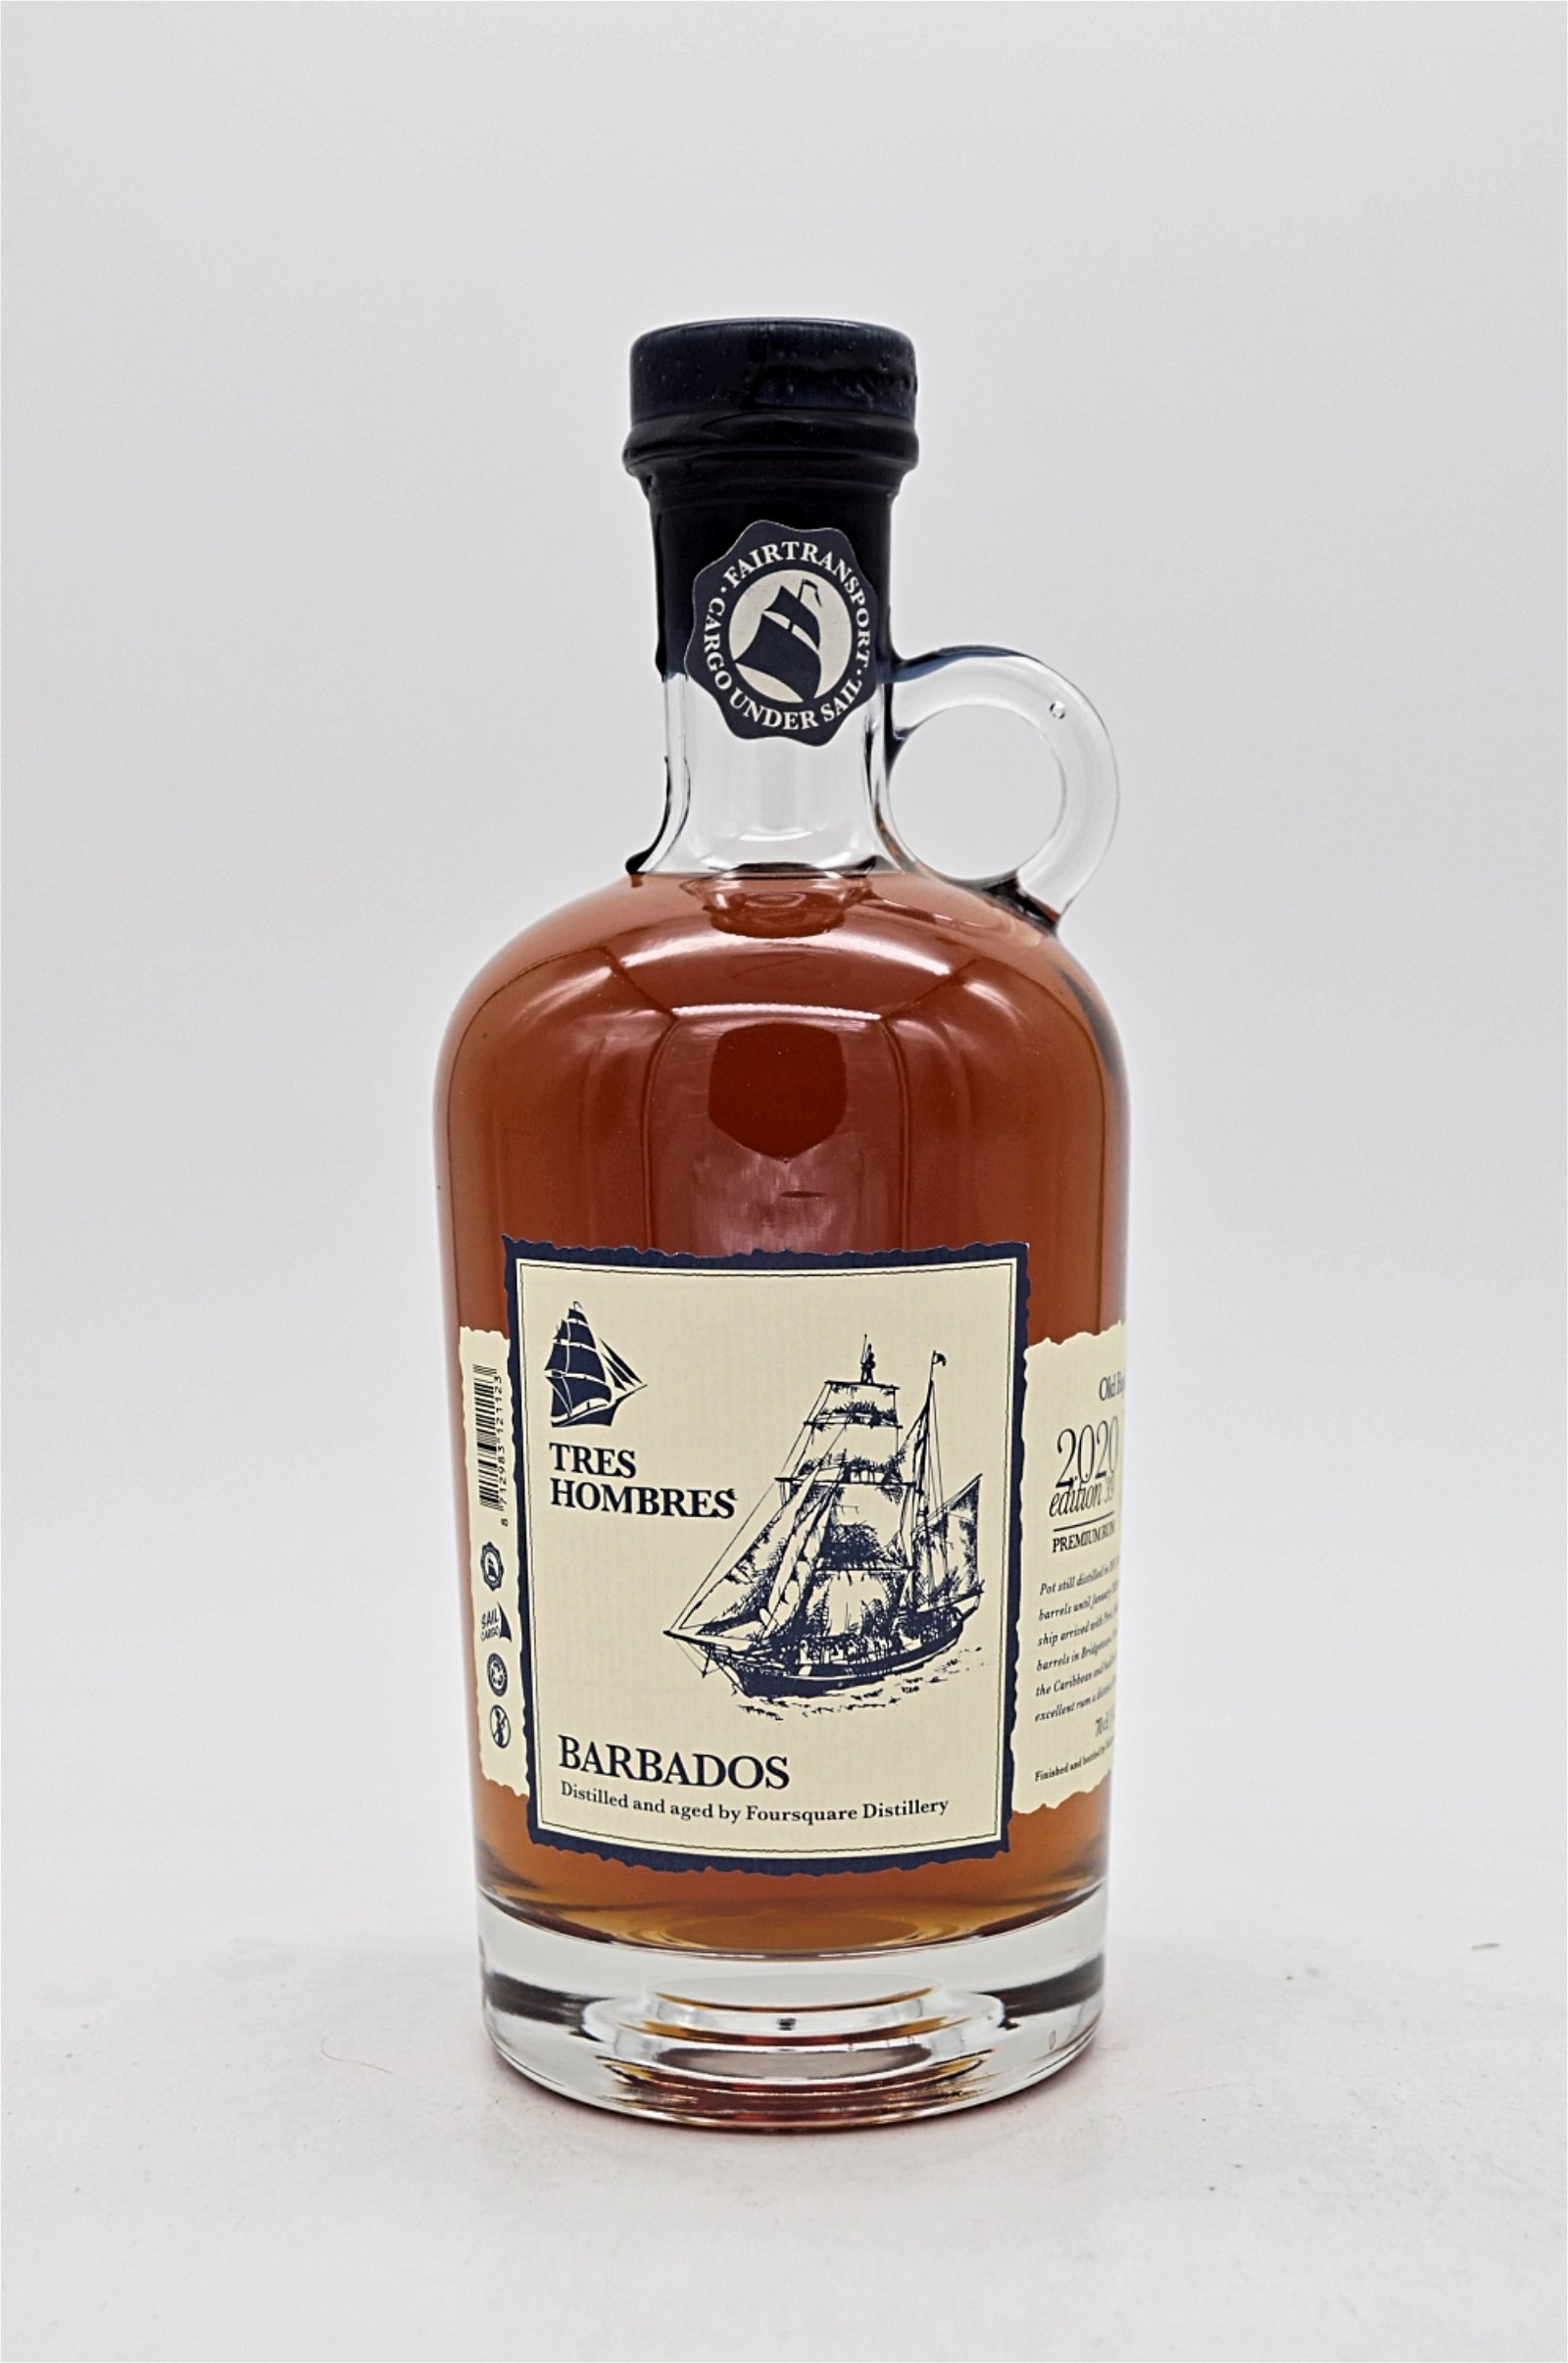 Tres Hombres VIII Jahre 2020 Edition 39 Barbados Old Bajan Premium Single Barrel Rum